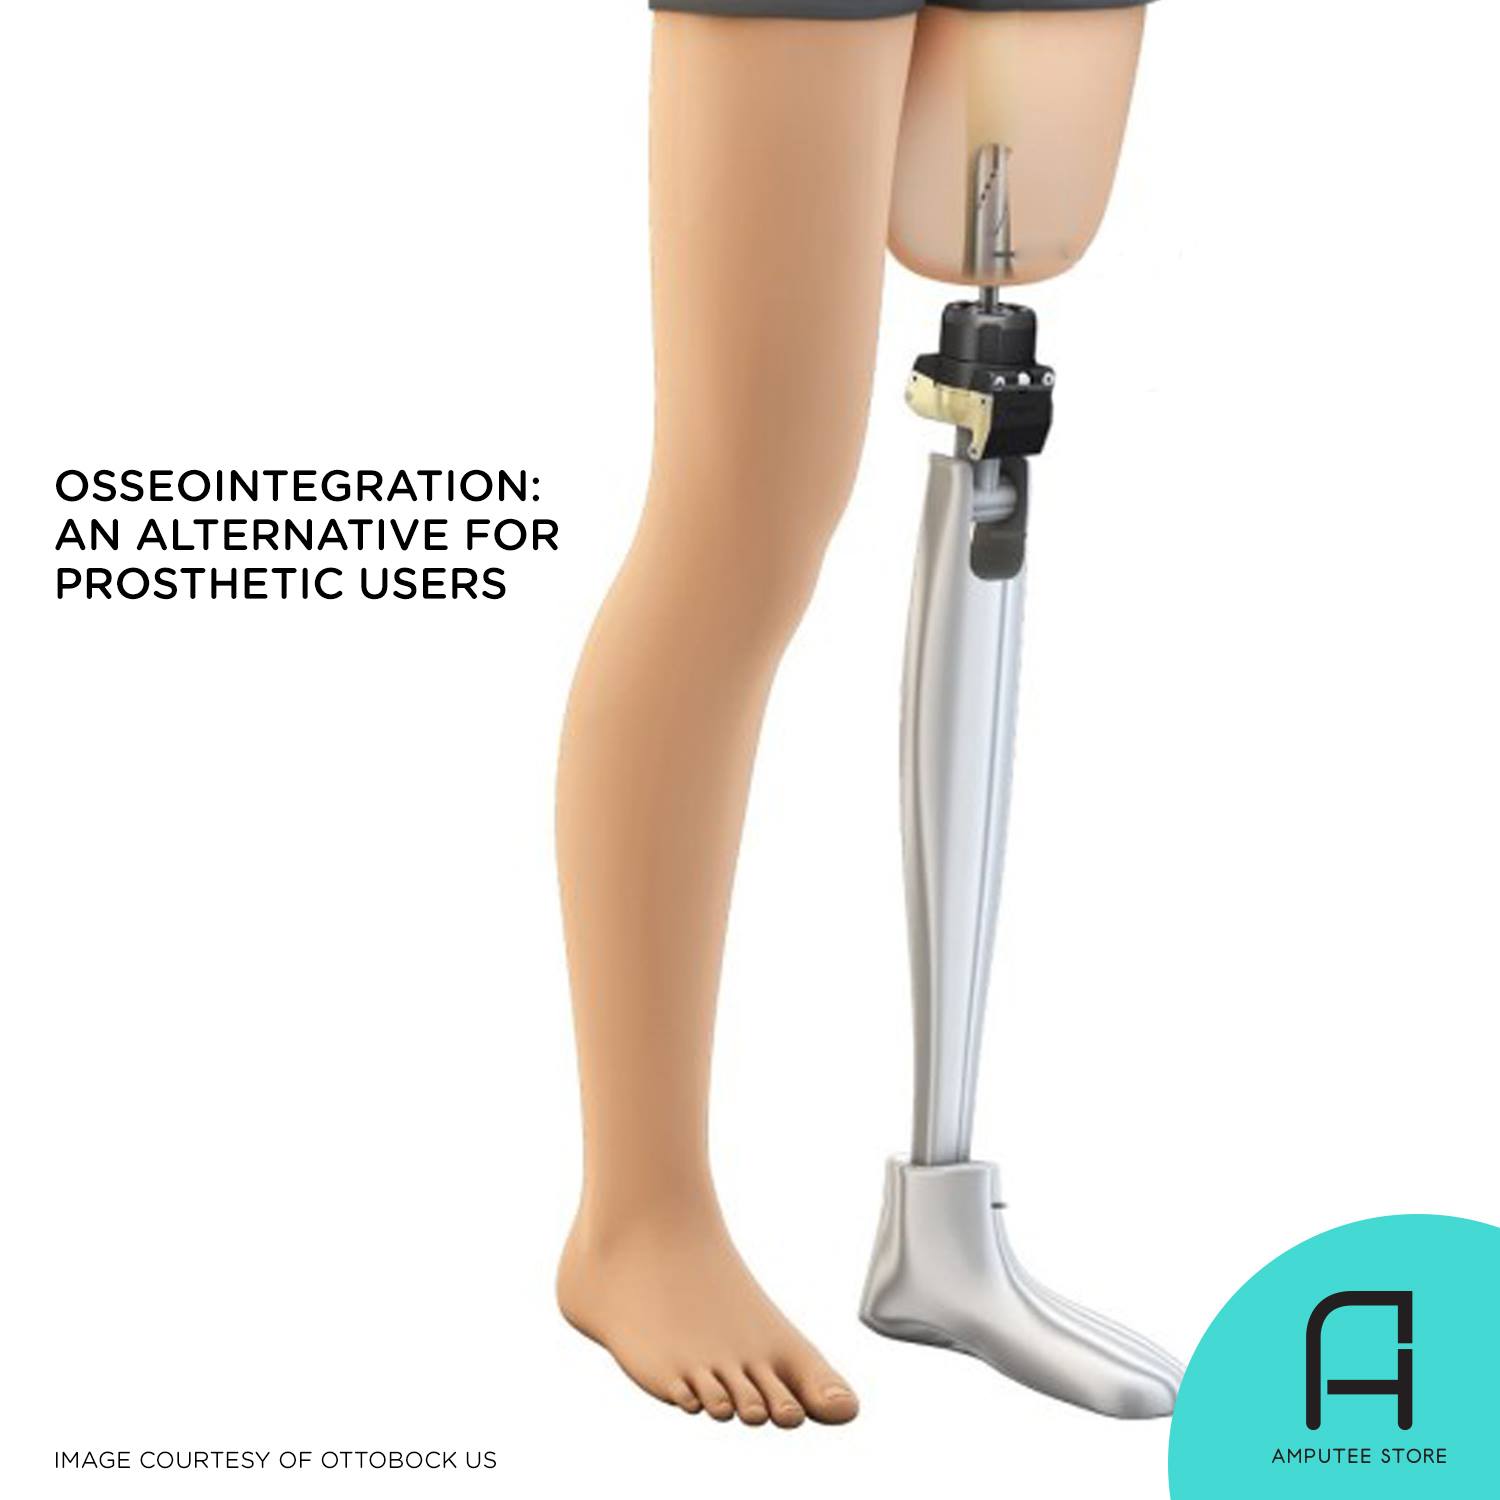 Osseointegration: An Alternative for Prosthetic Users